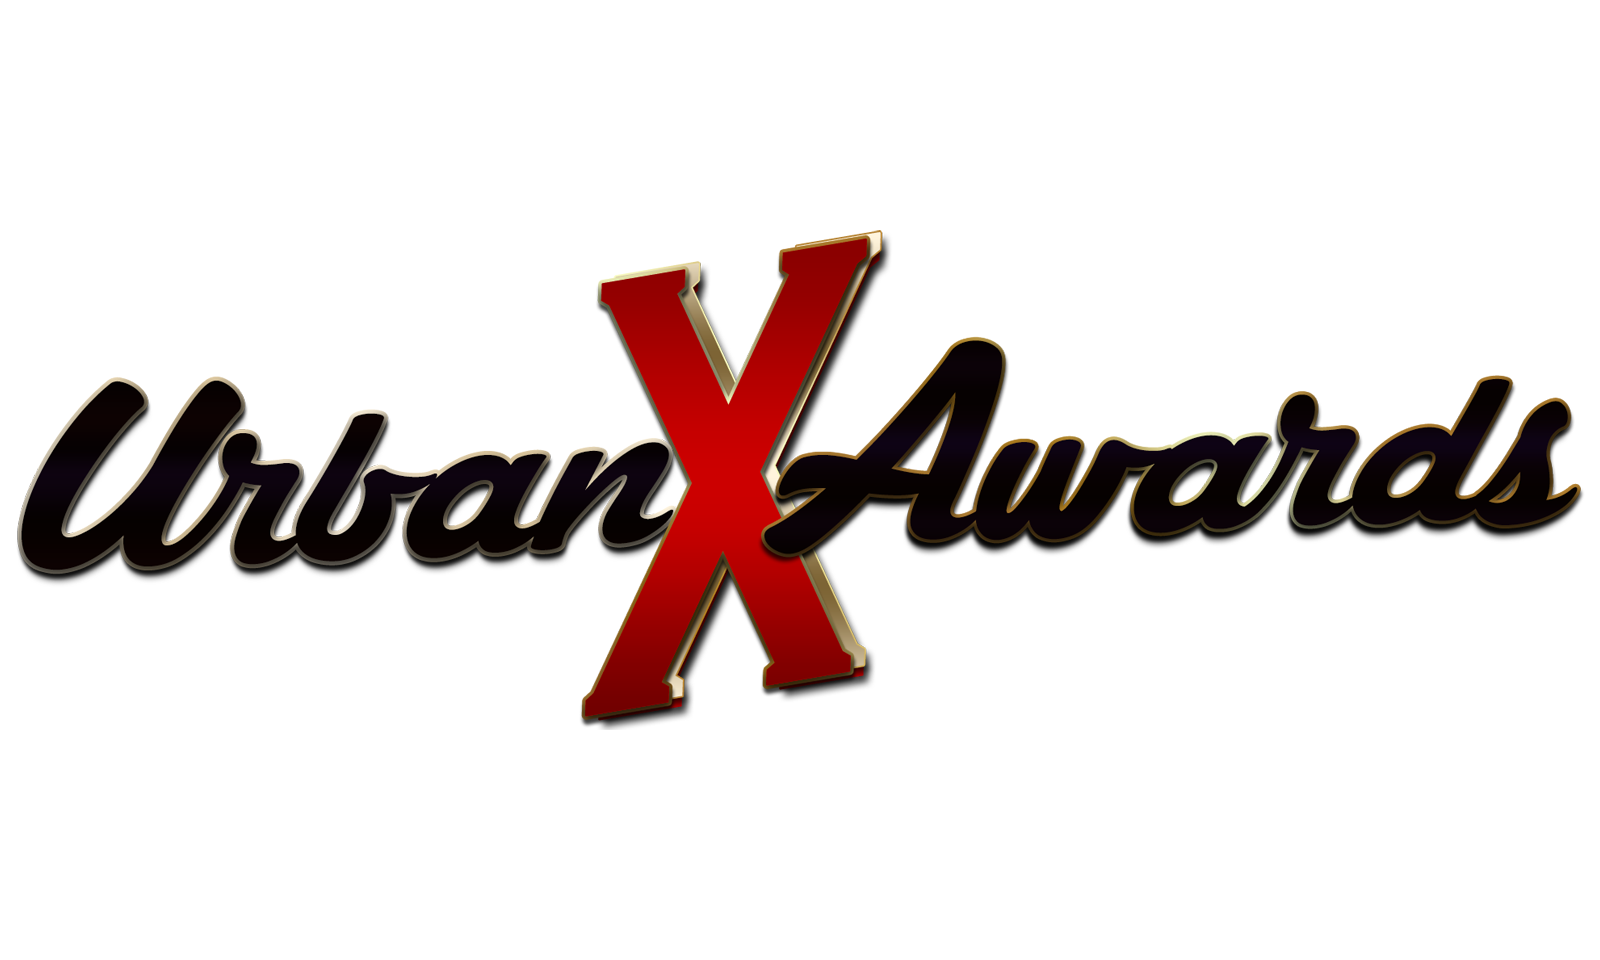 Urban X Awards Announces Event Details, Opens Fan Voting